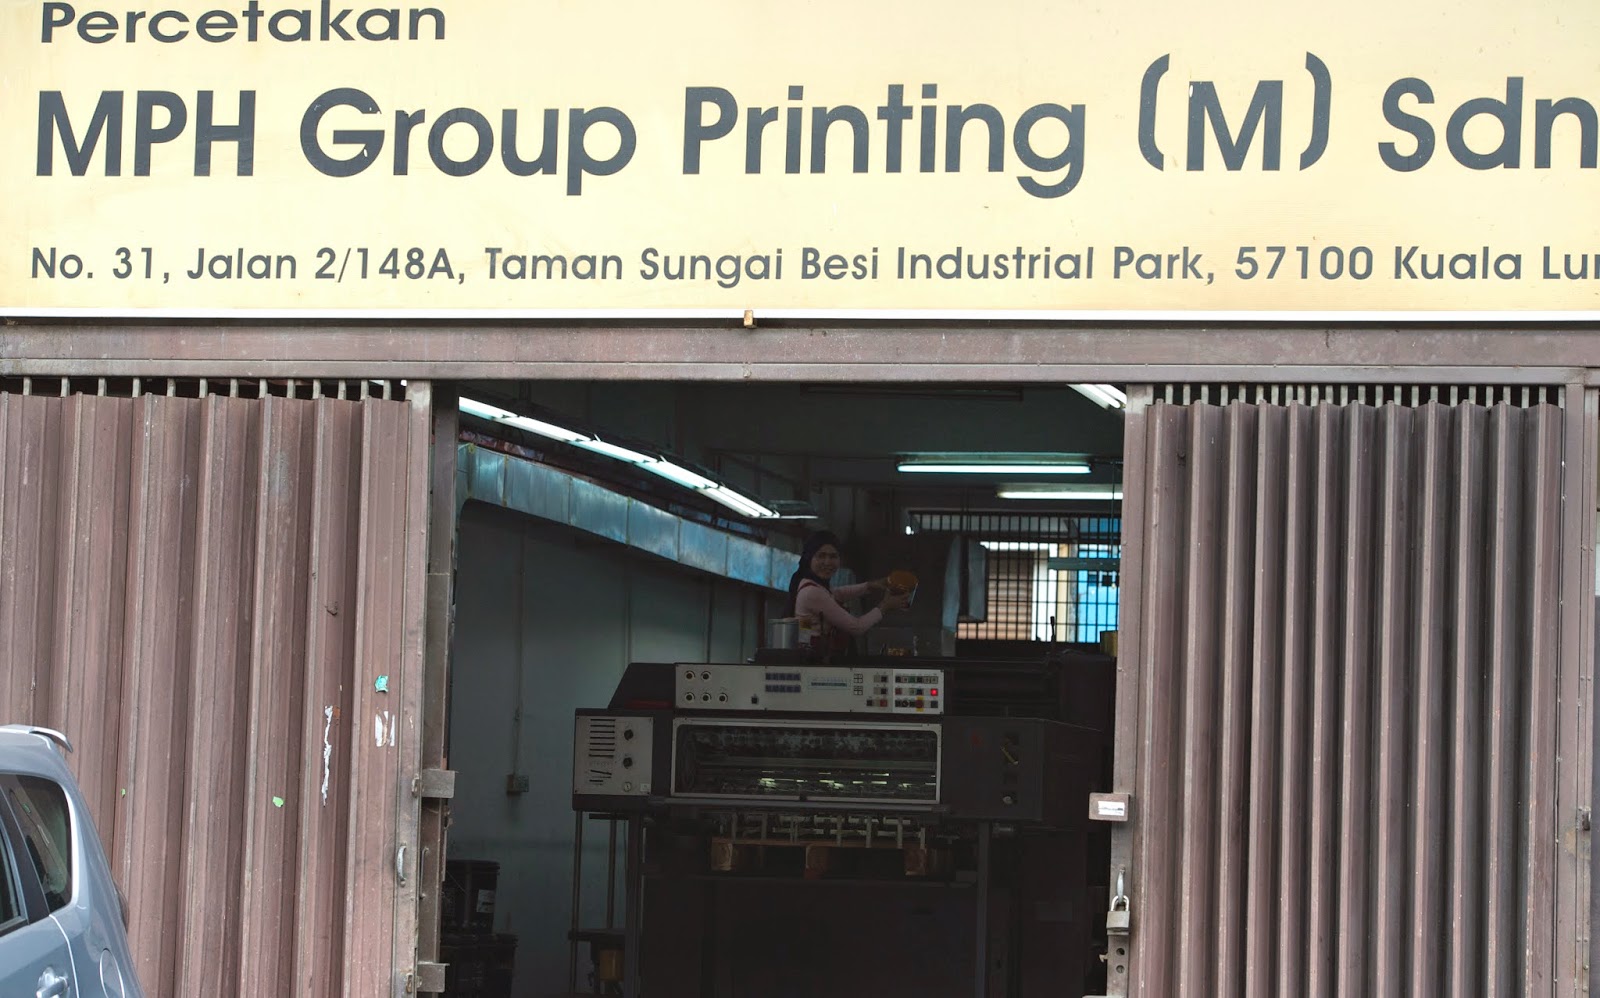 MPH Group Printing (M) Sdn Bhd: Profil MPH Group Printing ...